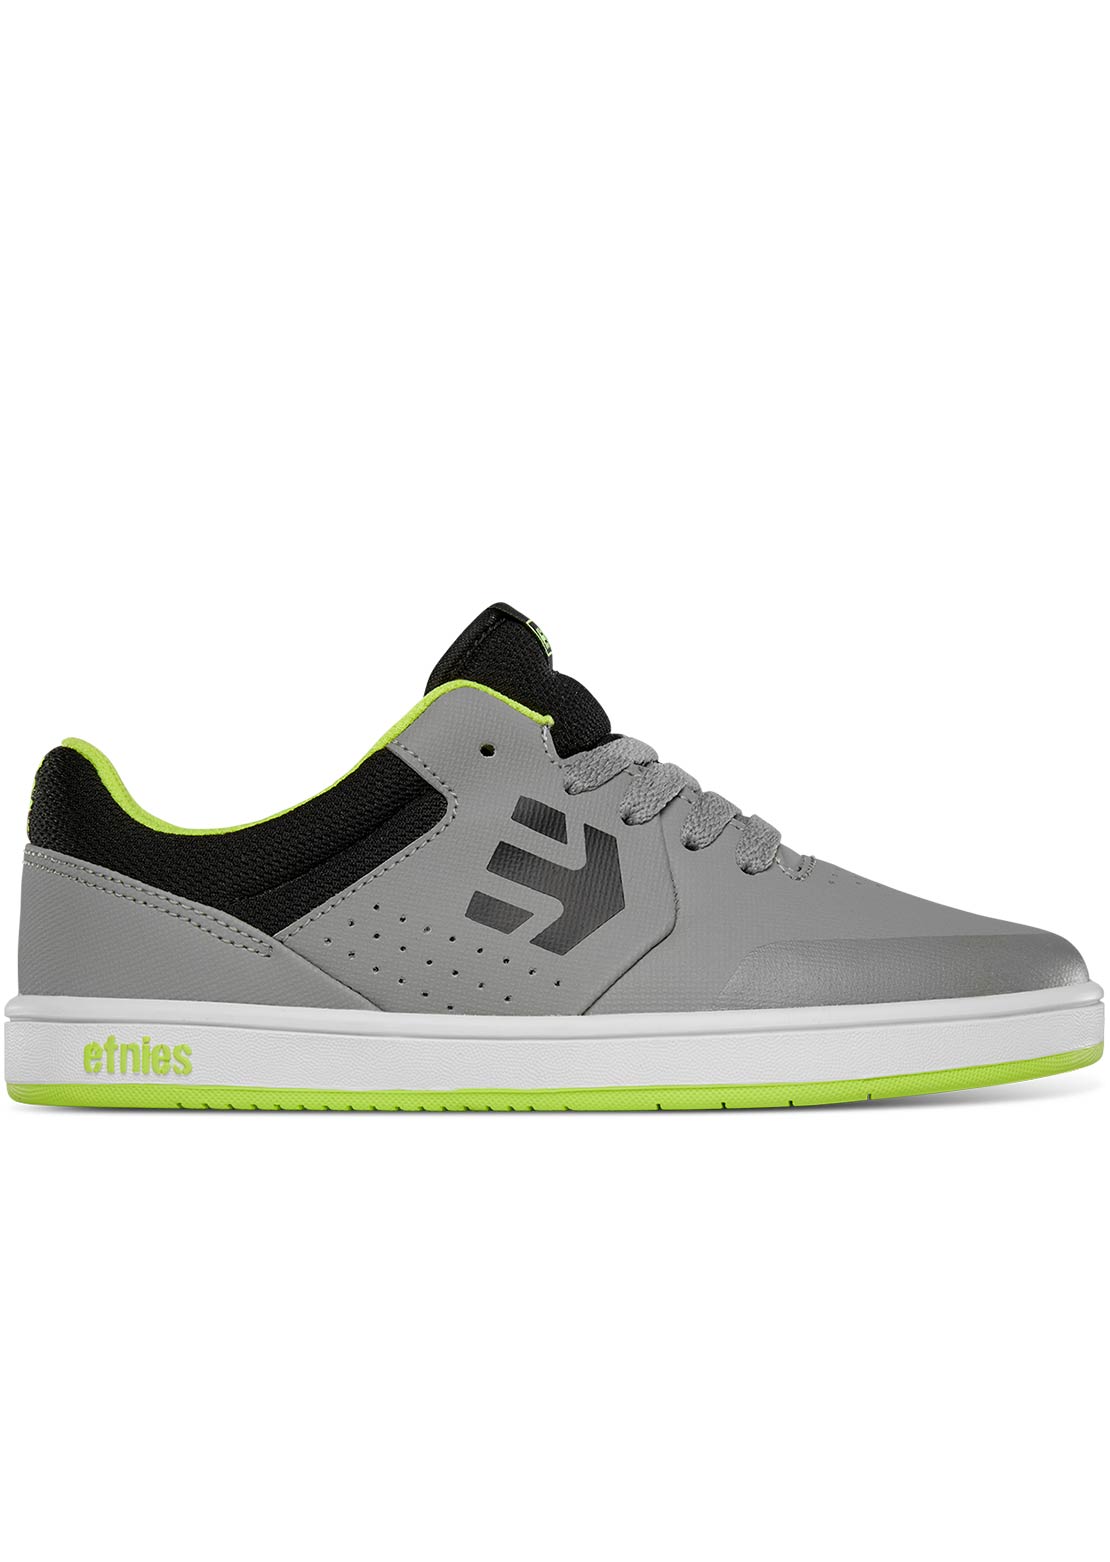 Etnies Junior Marana Shoes Grey/Lime/White